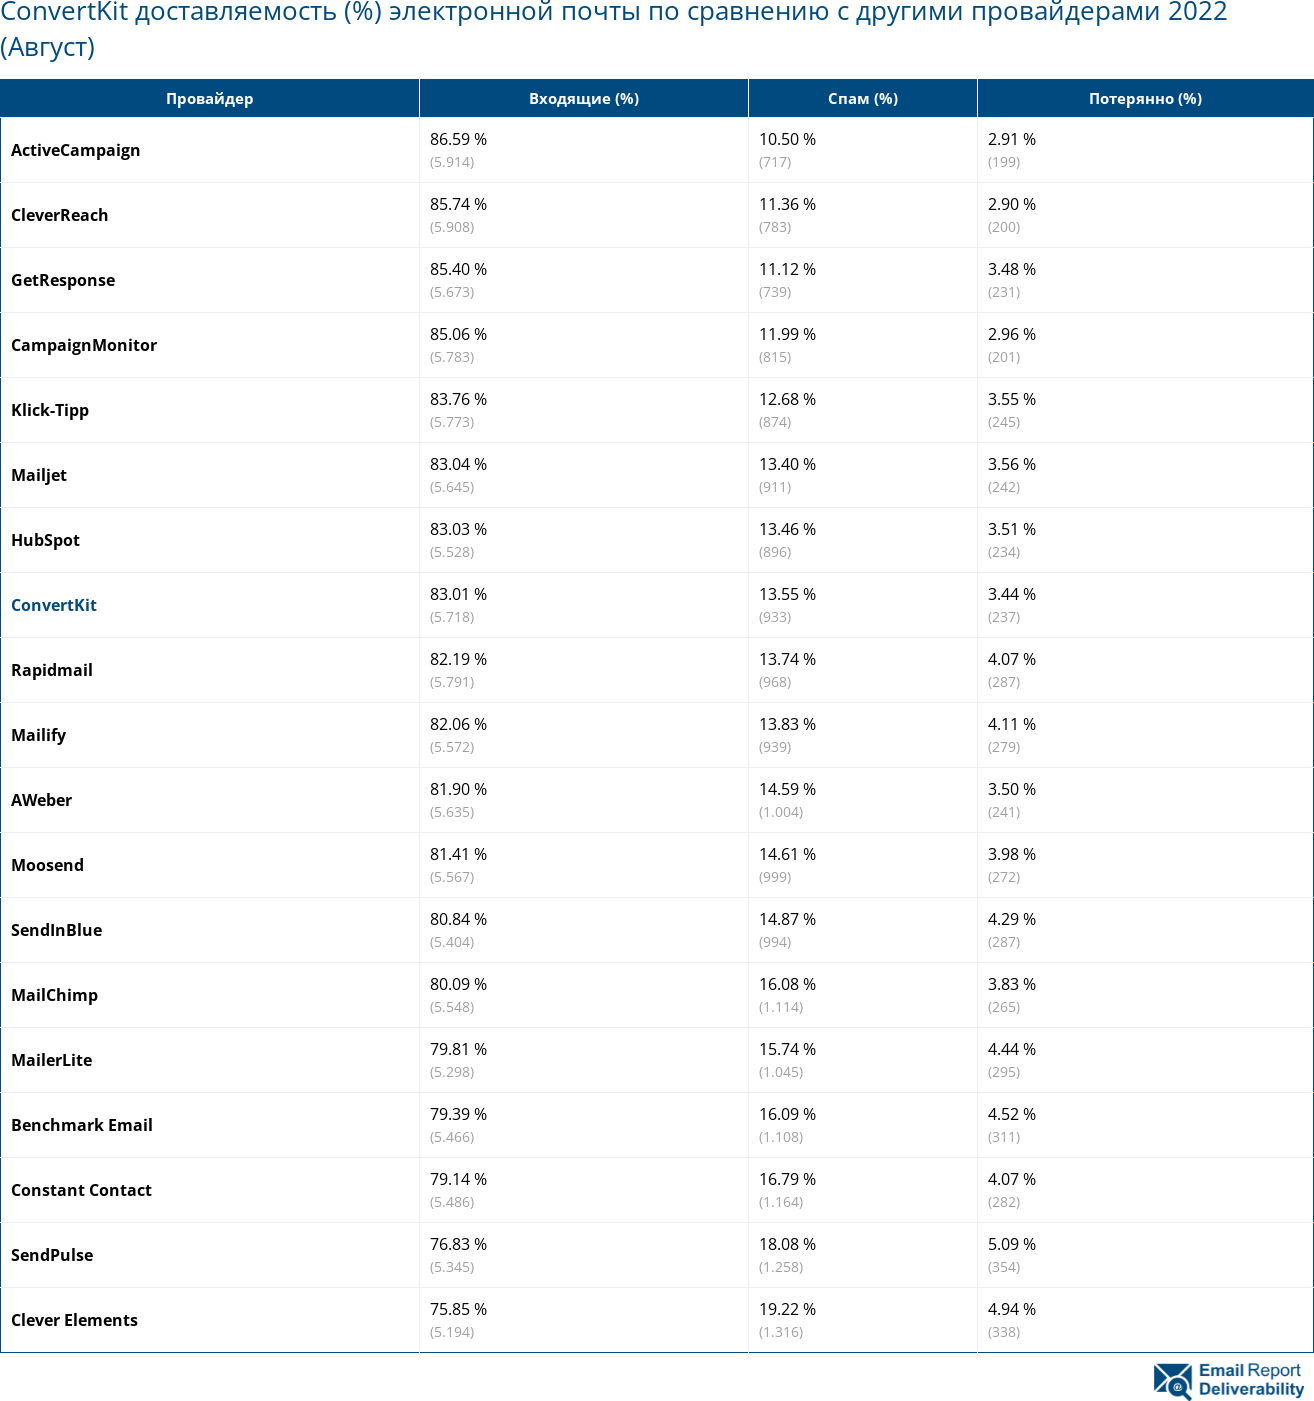 ConvertKit доставляемость (%) электронной почты по сравнению с другими провайдерами 2022 (Август)